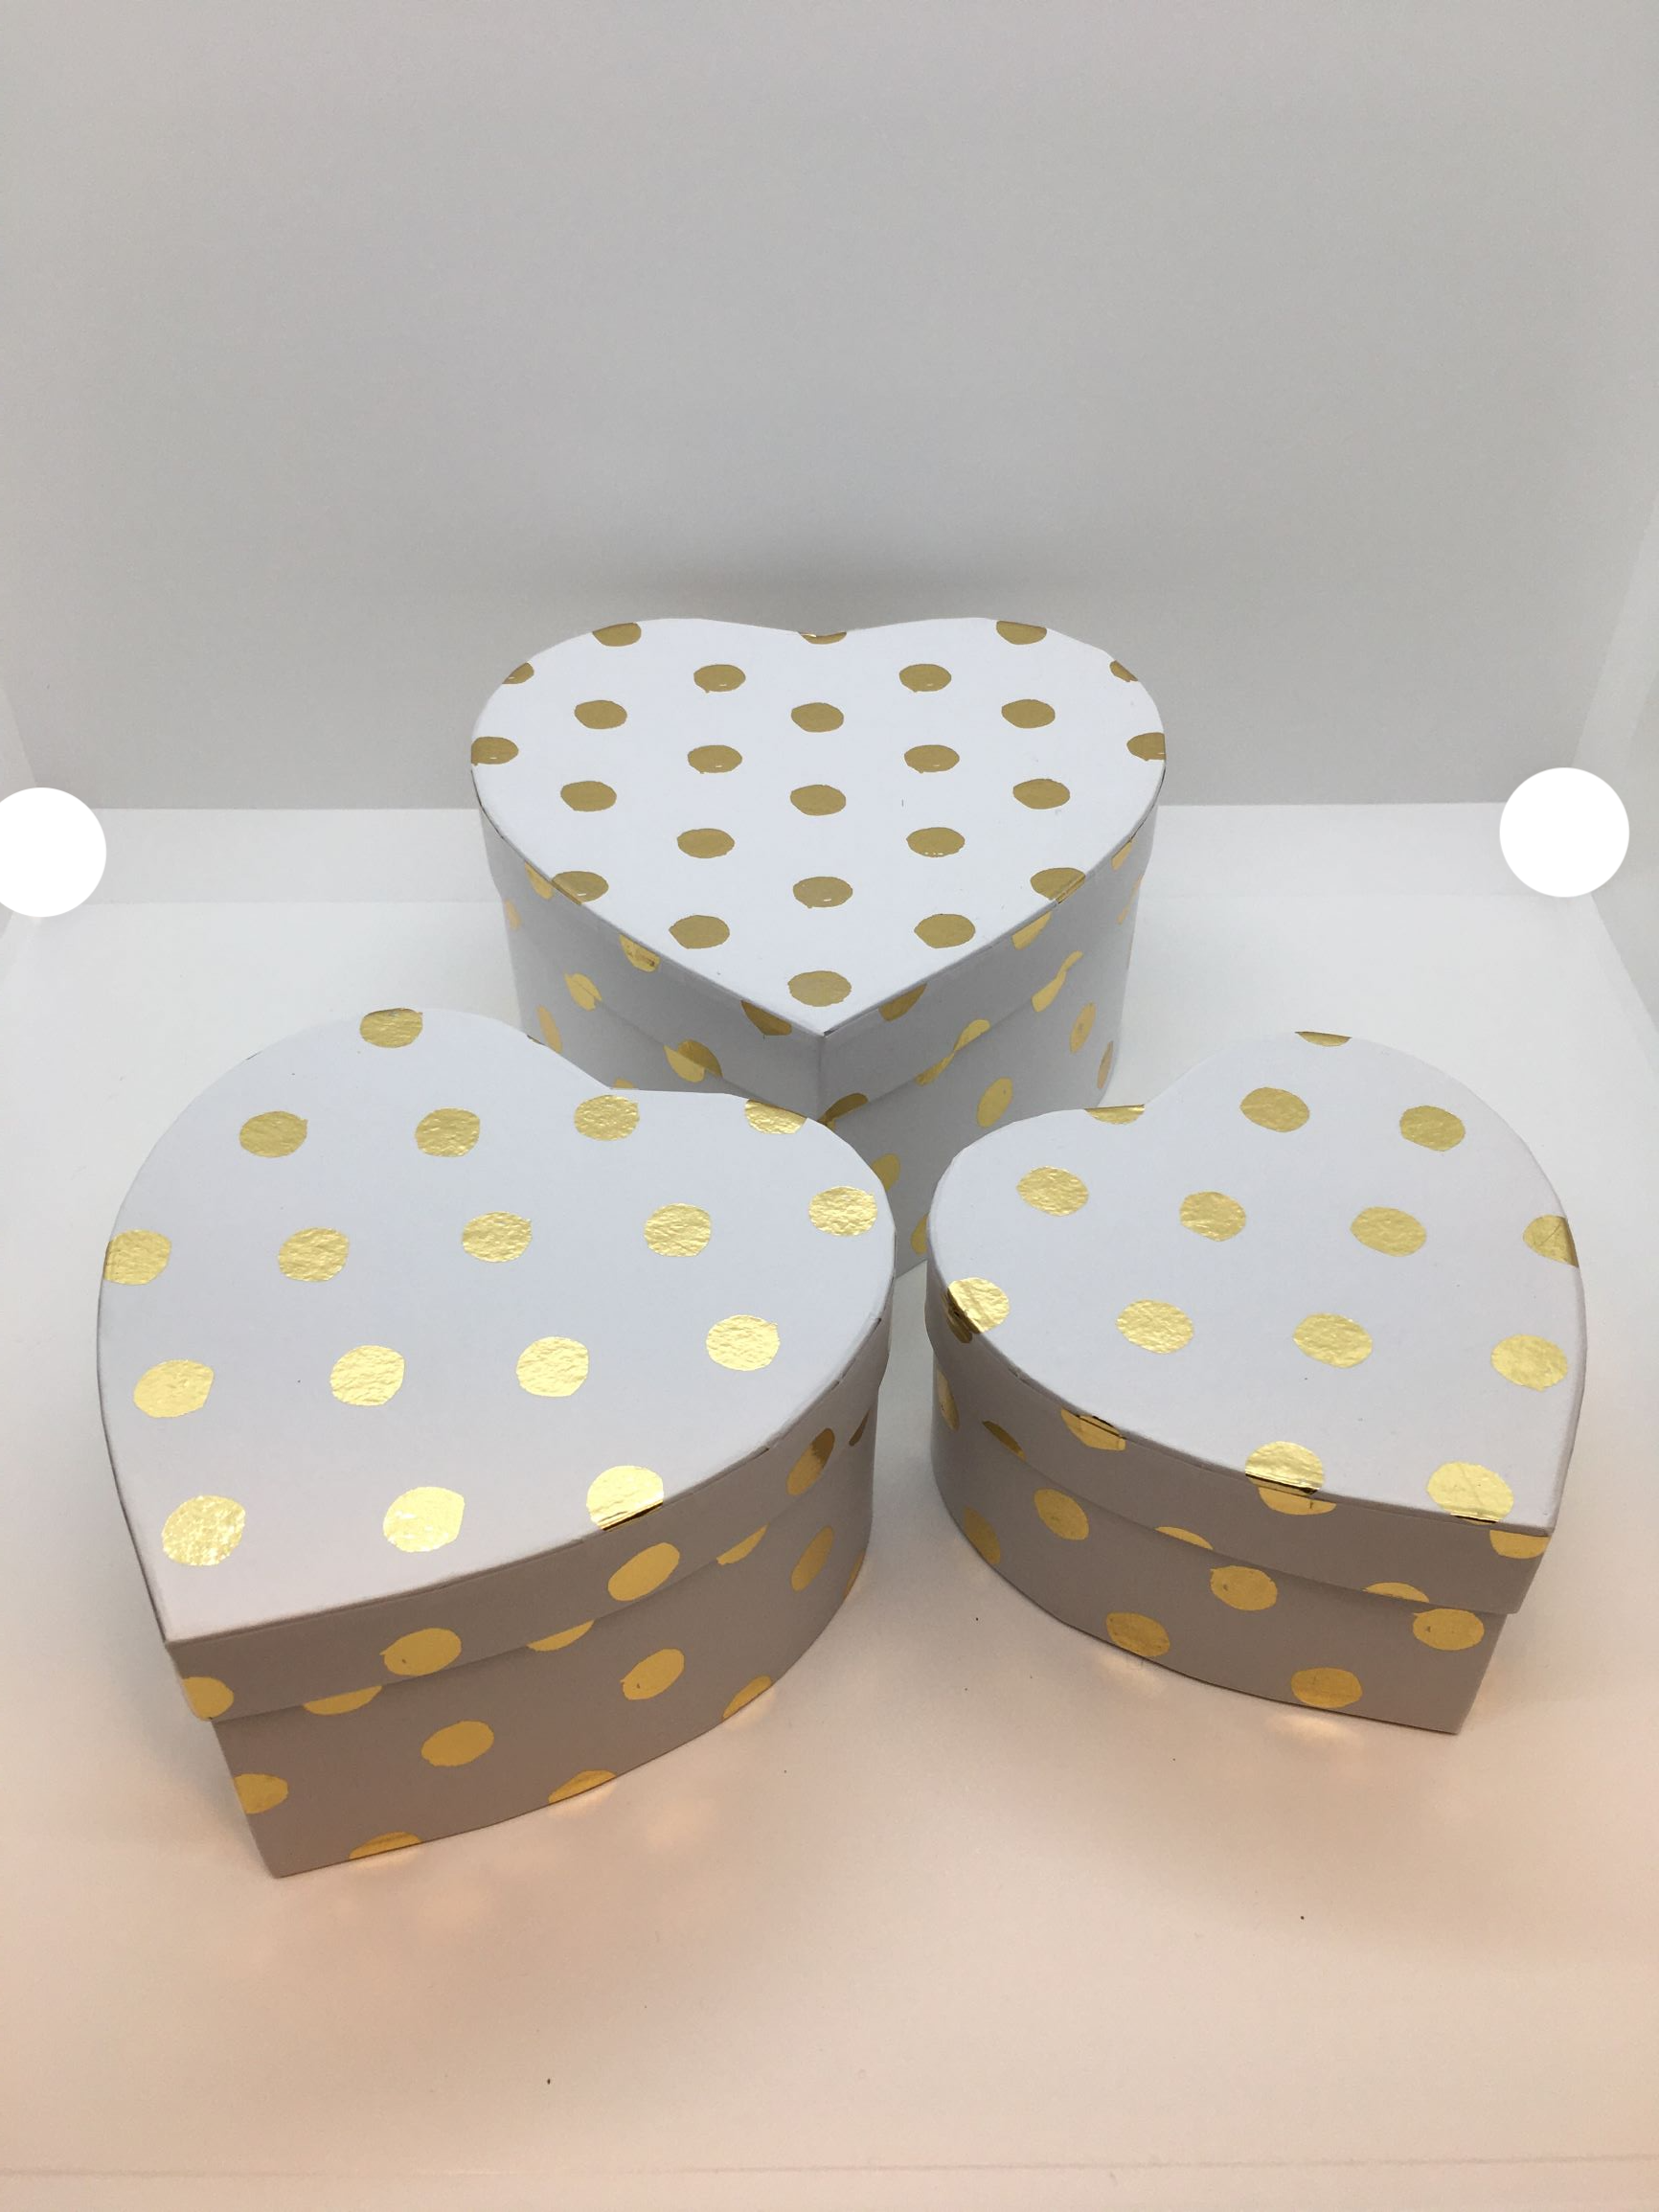 Set di 3 scatole regalo a forma di cuore in cartone bianco con decorazione pois color oro. Dimensione: scatola piccola cm 11 x 11 x 6 h scatola media cm 13 x 13 x 7 h scatola grande cm 15 x 15 x 8 h